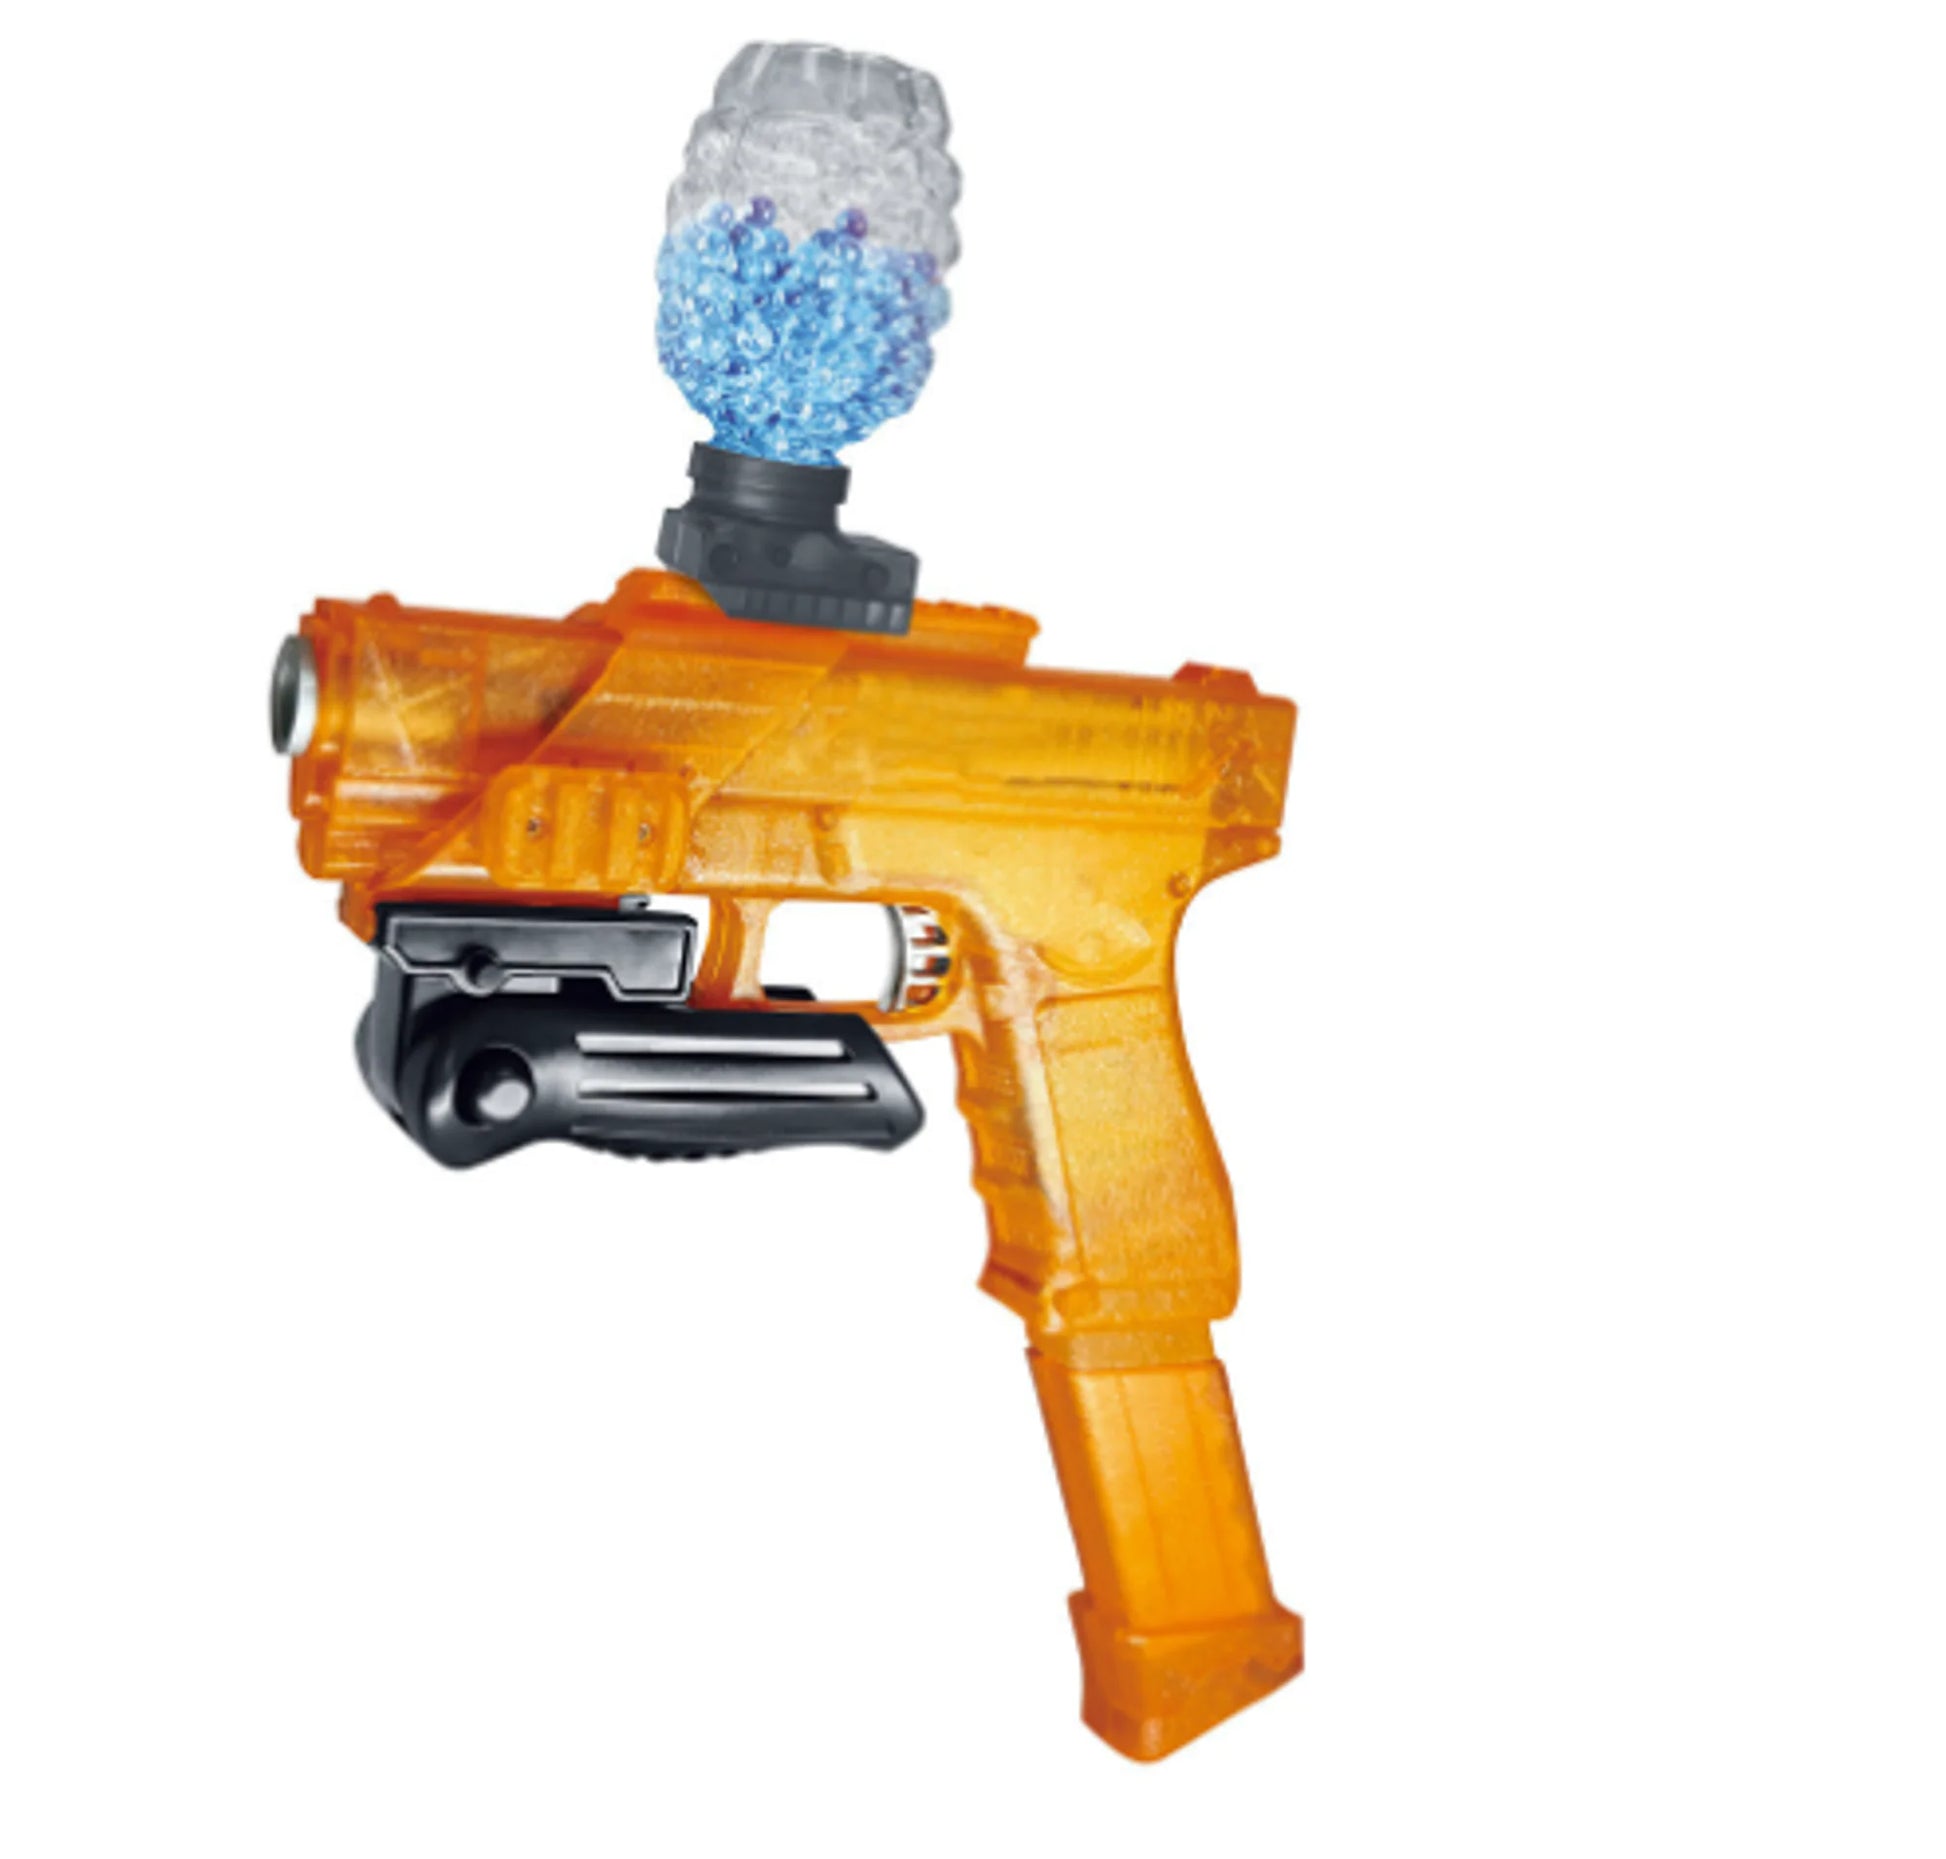 Water Blaster Toy Gun